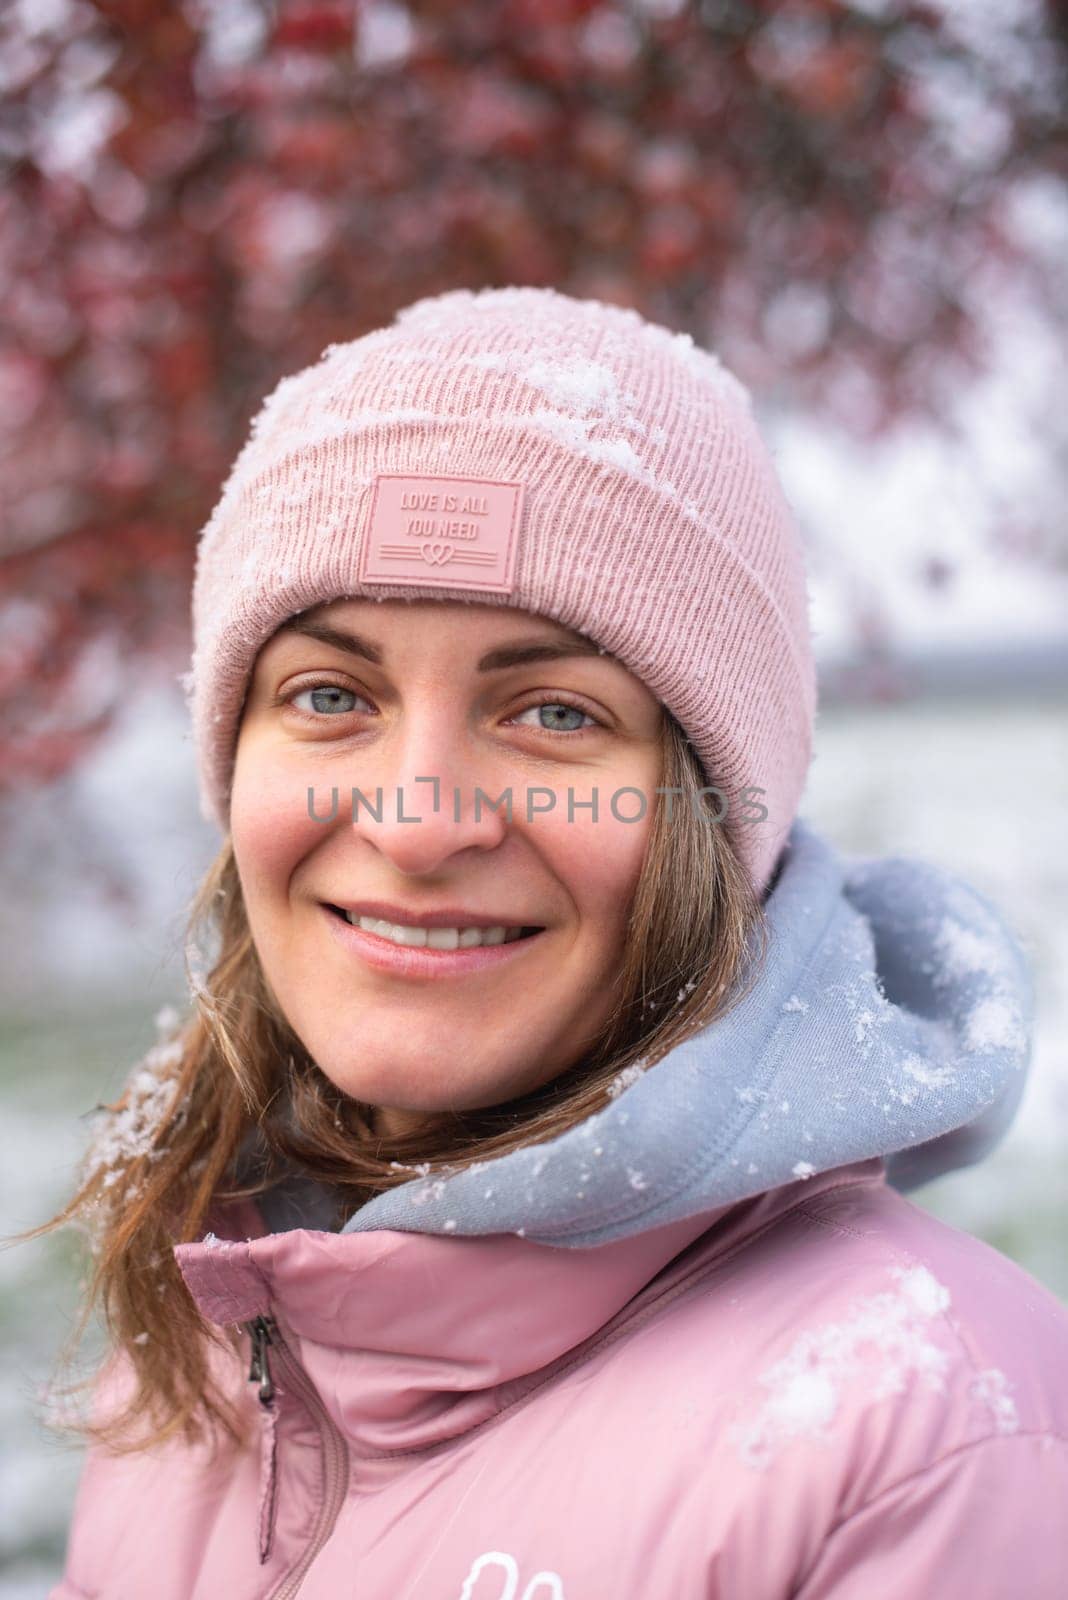 Winter Elegance: Portrait of a Beautiful Girl in a Snowy European Village